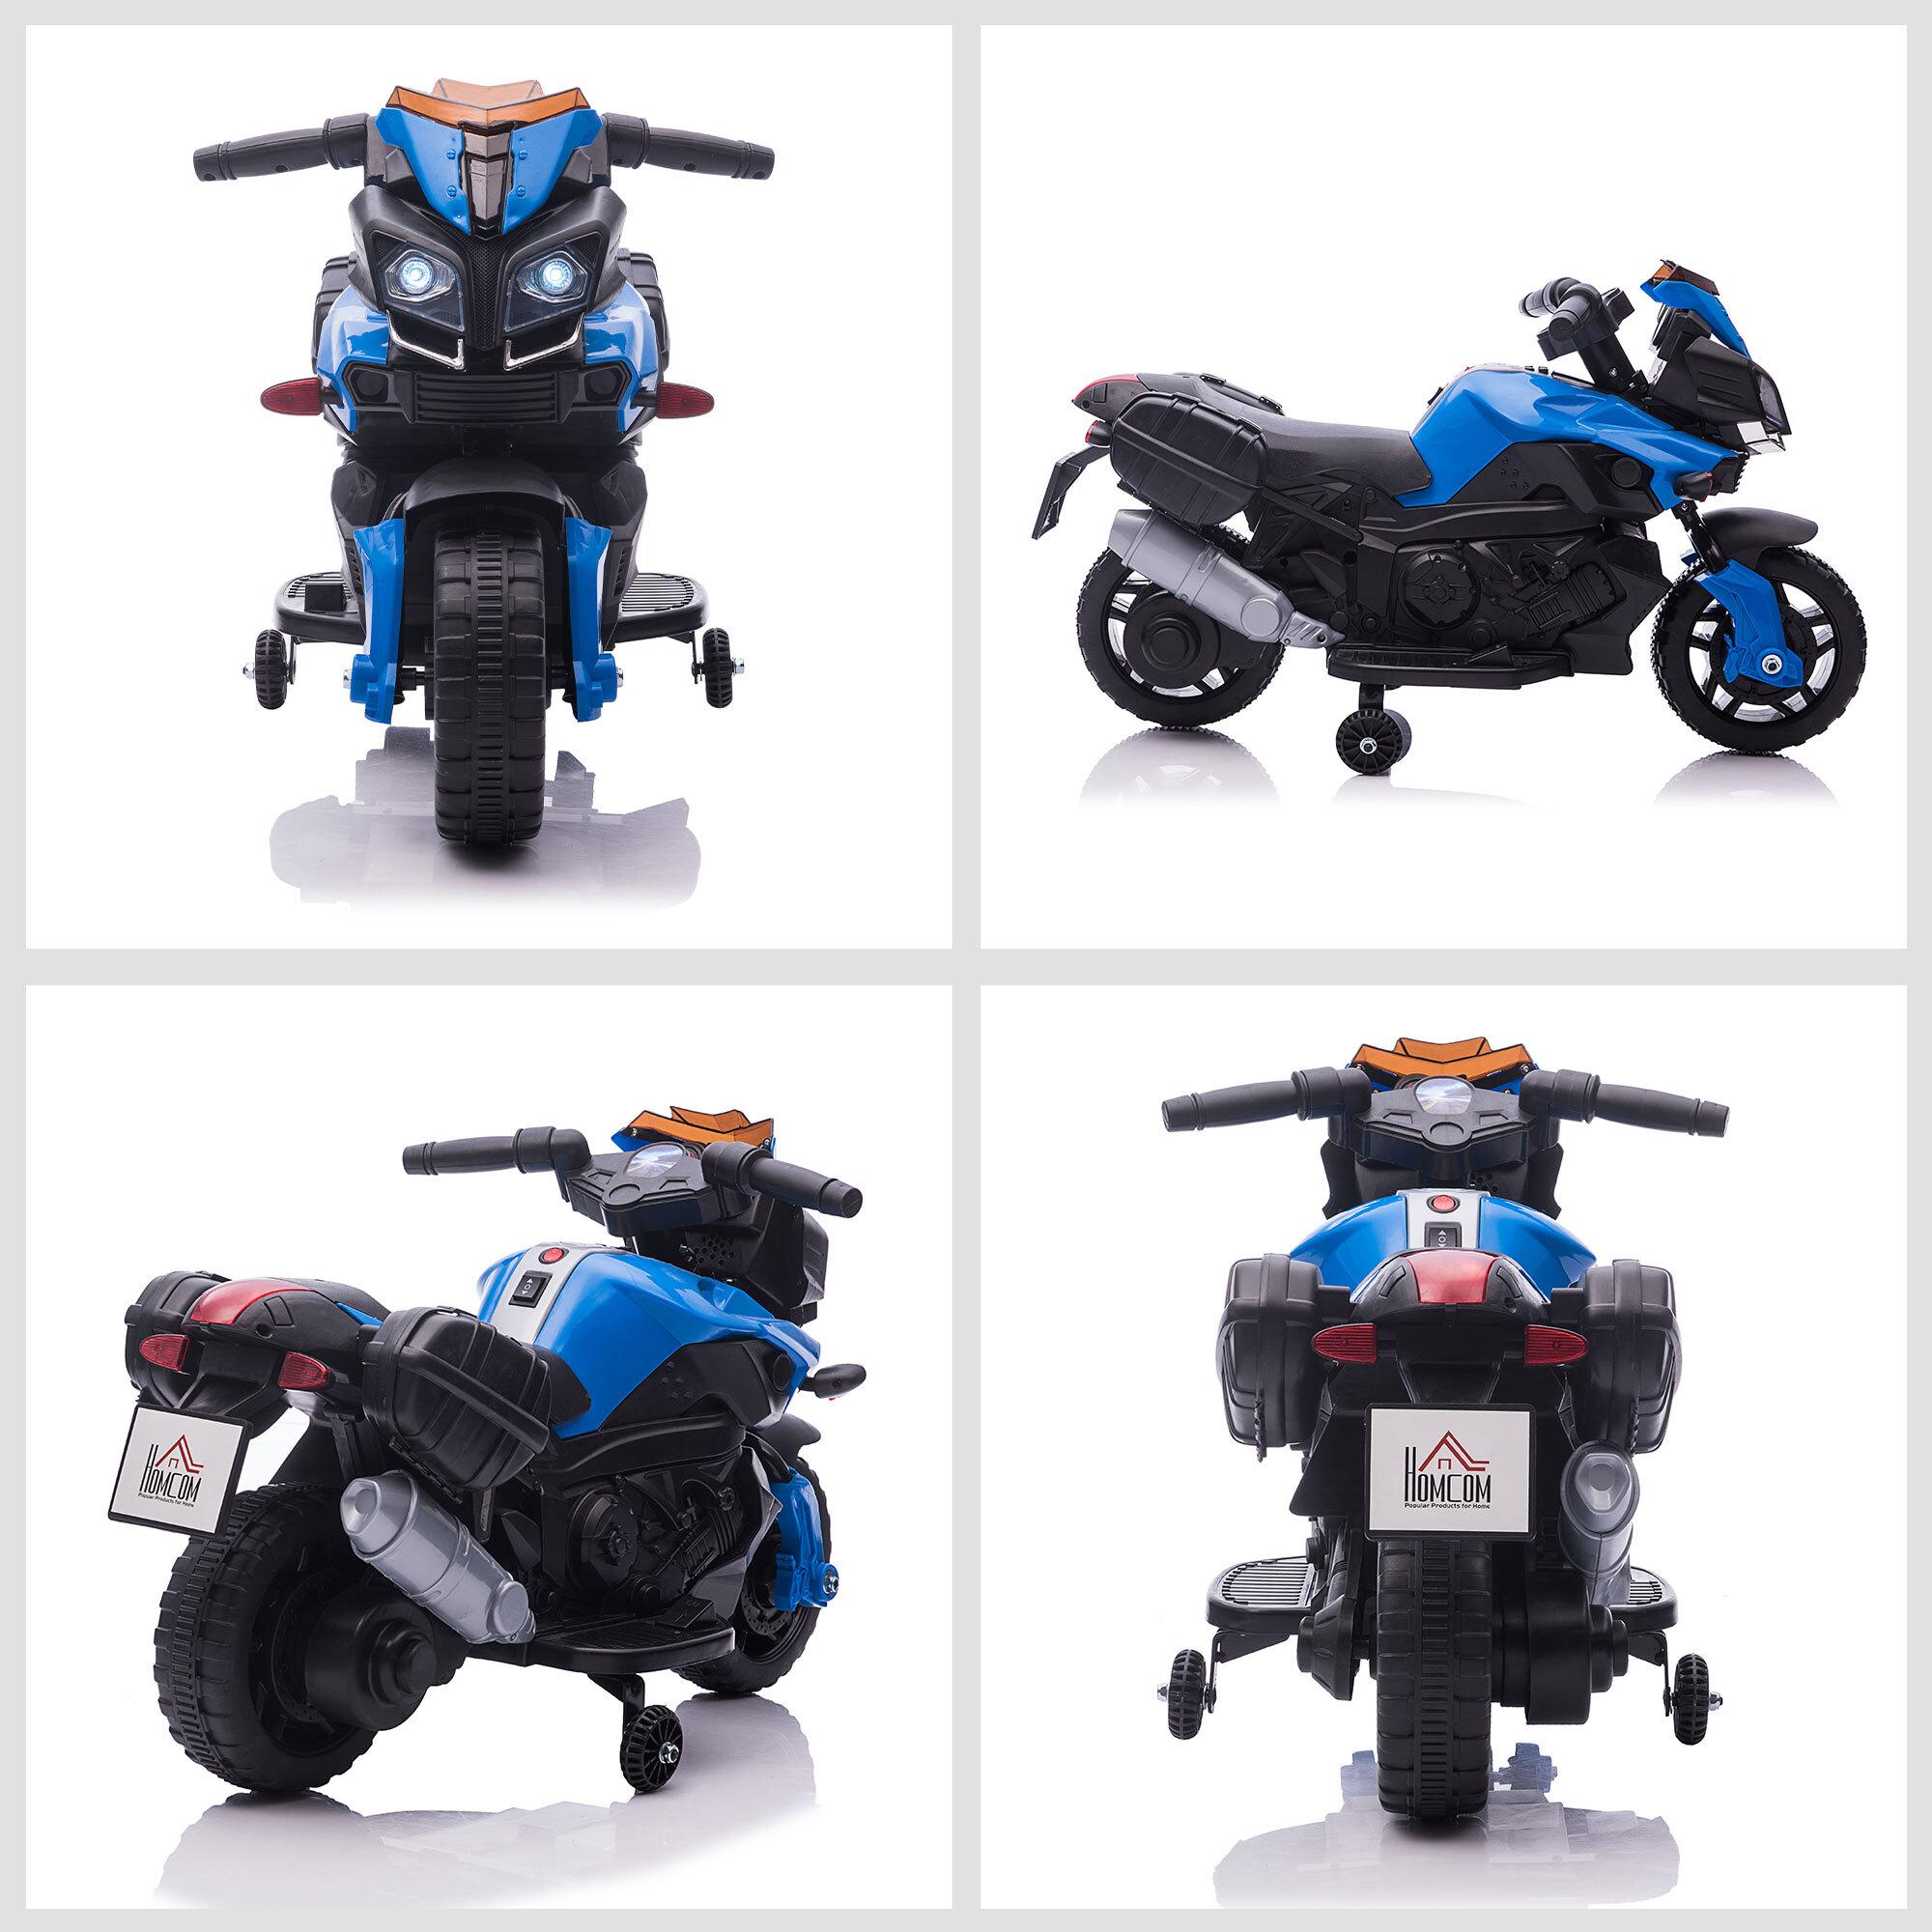 Moto électrique enfant 6 V 3 Km/h effet lumineux et sonore roulettes amovibles repose-pied valises latérales métal PP bleu noir